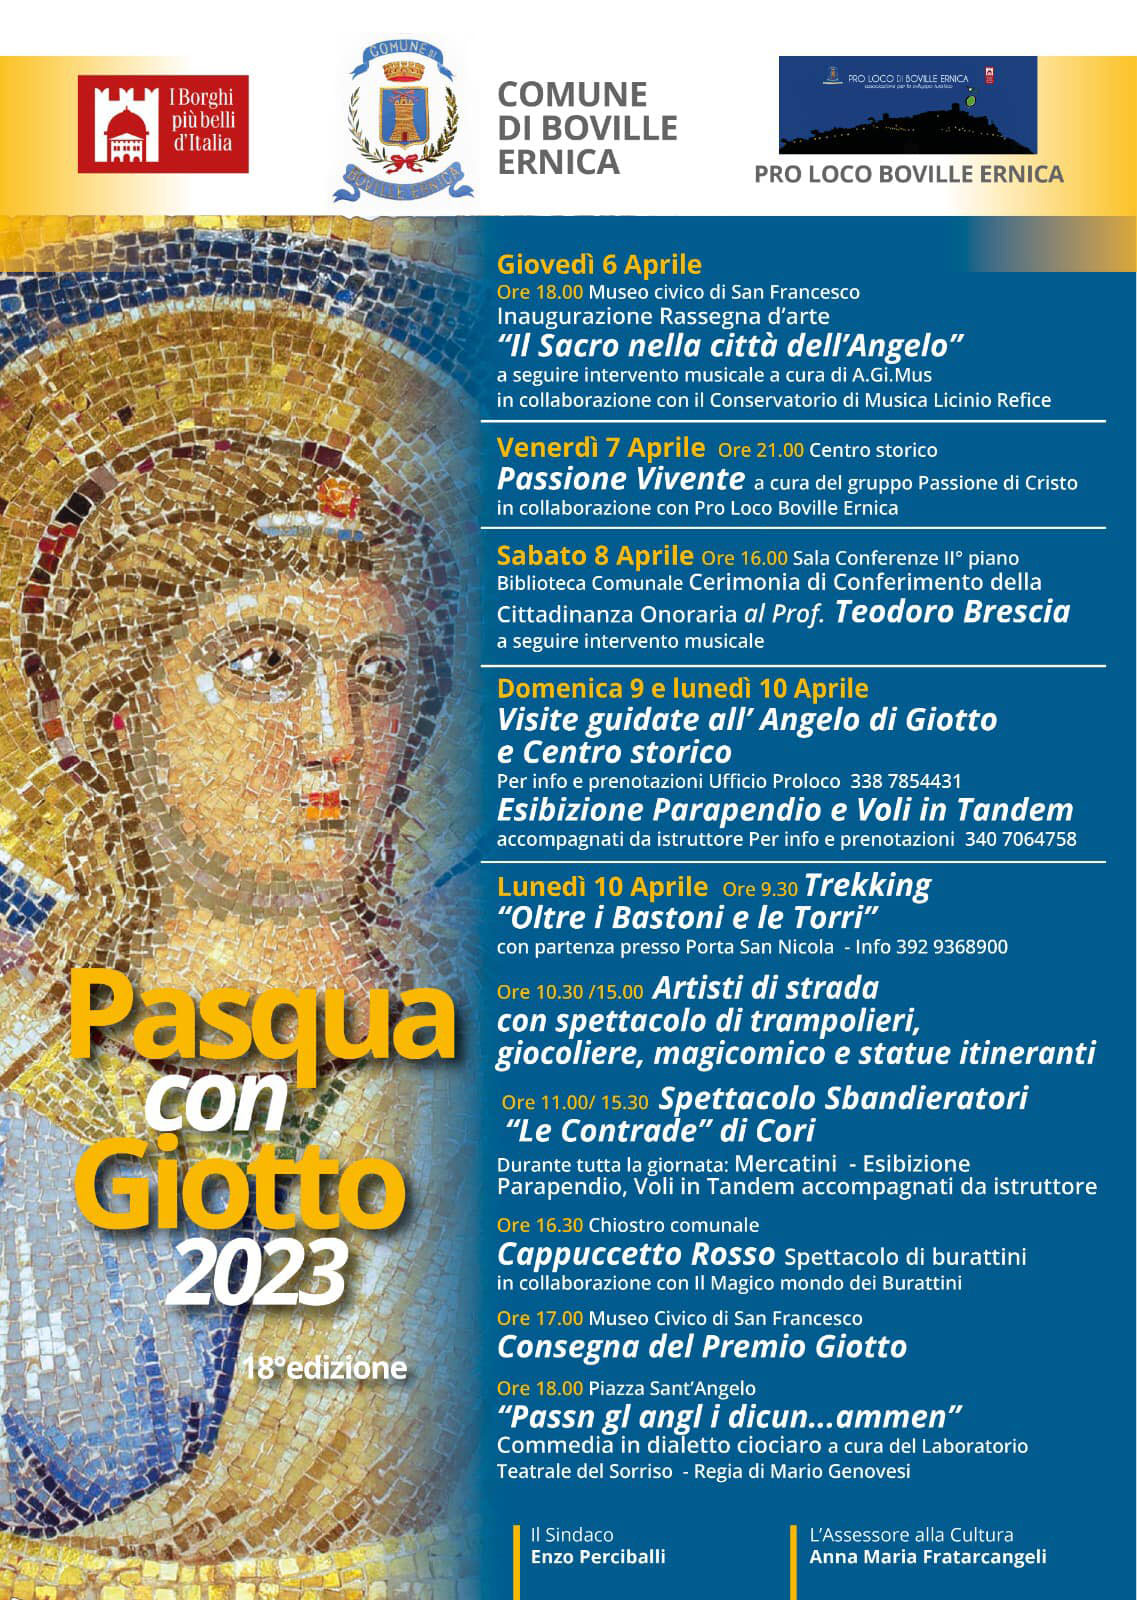 Pasqua con Giotto 2023